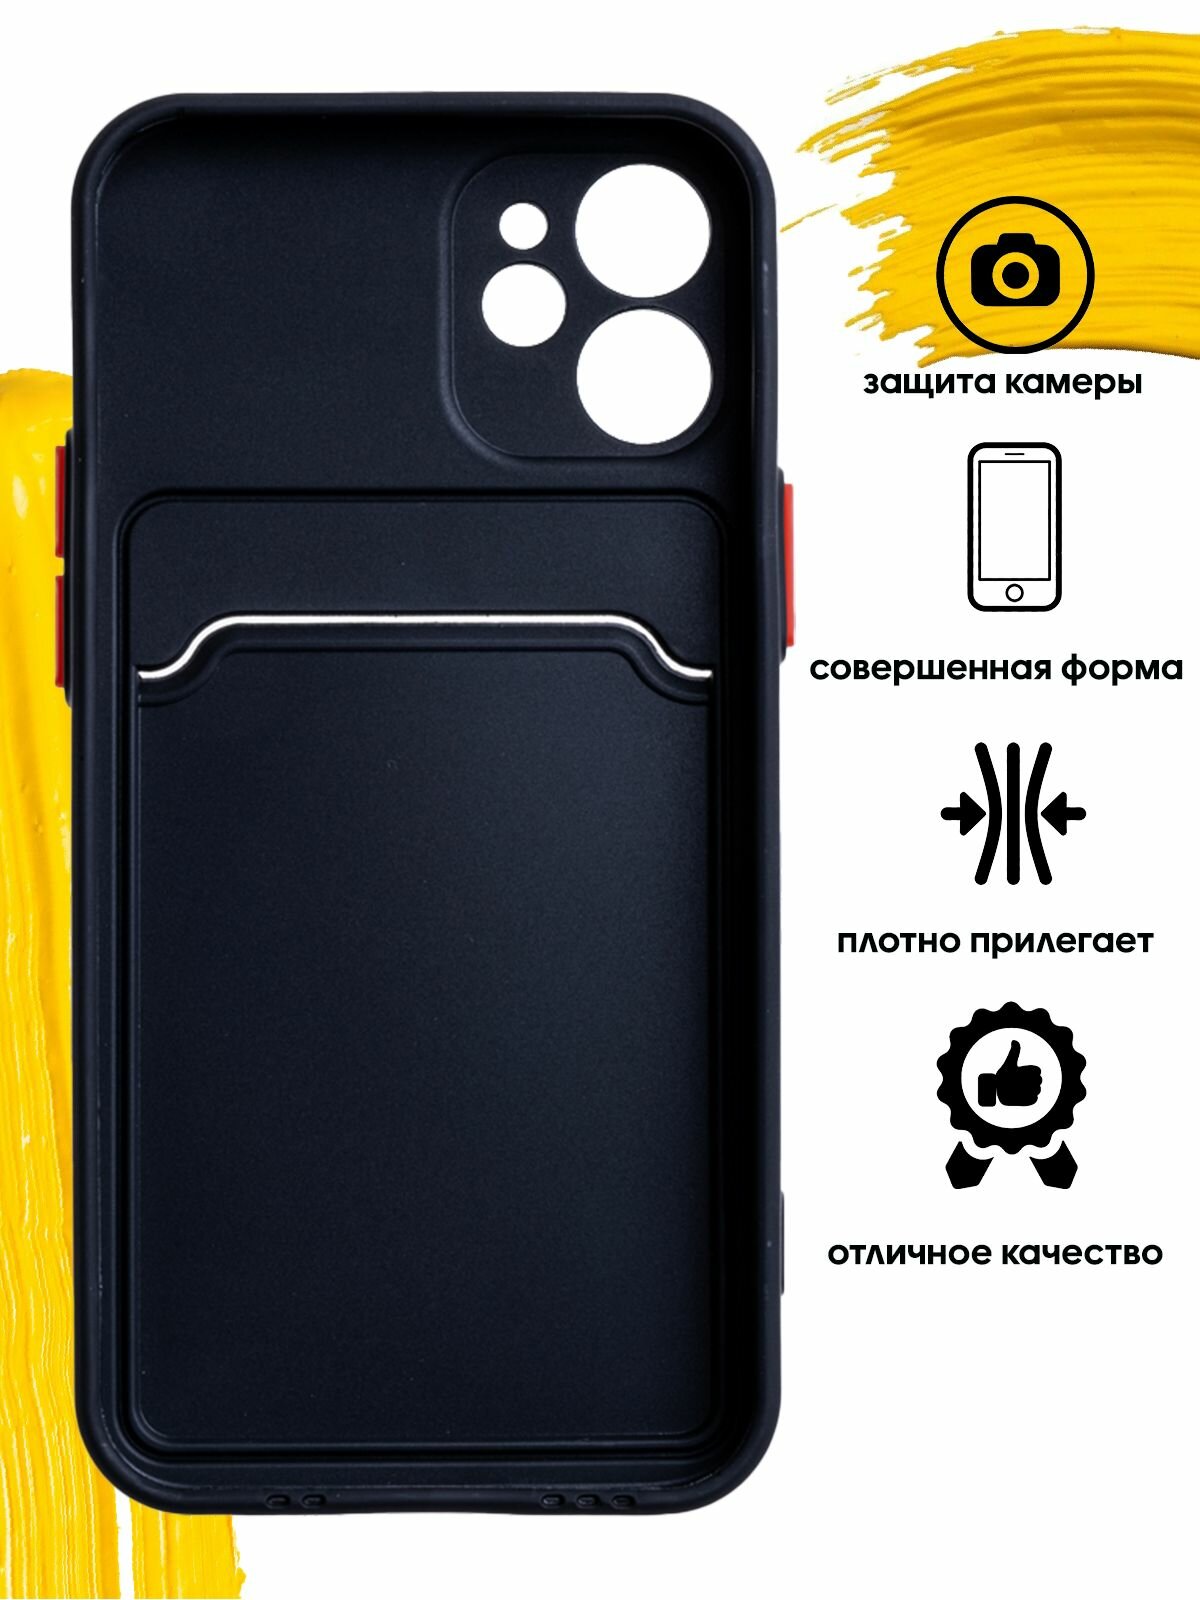 Чехол для карты на Apple iPhone 12 Mini / чехол на айфон 12 мини с защитой камеры черный